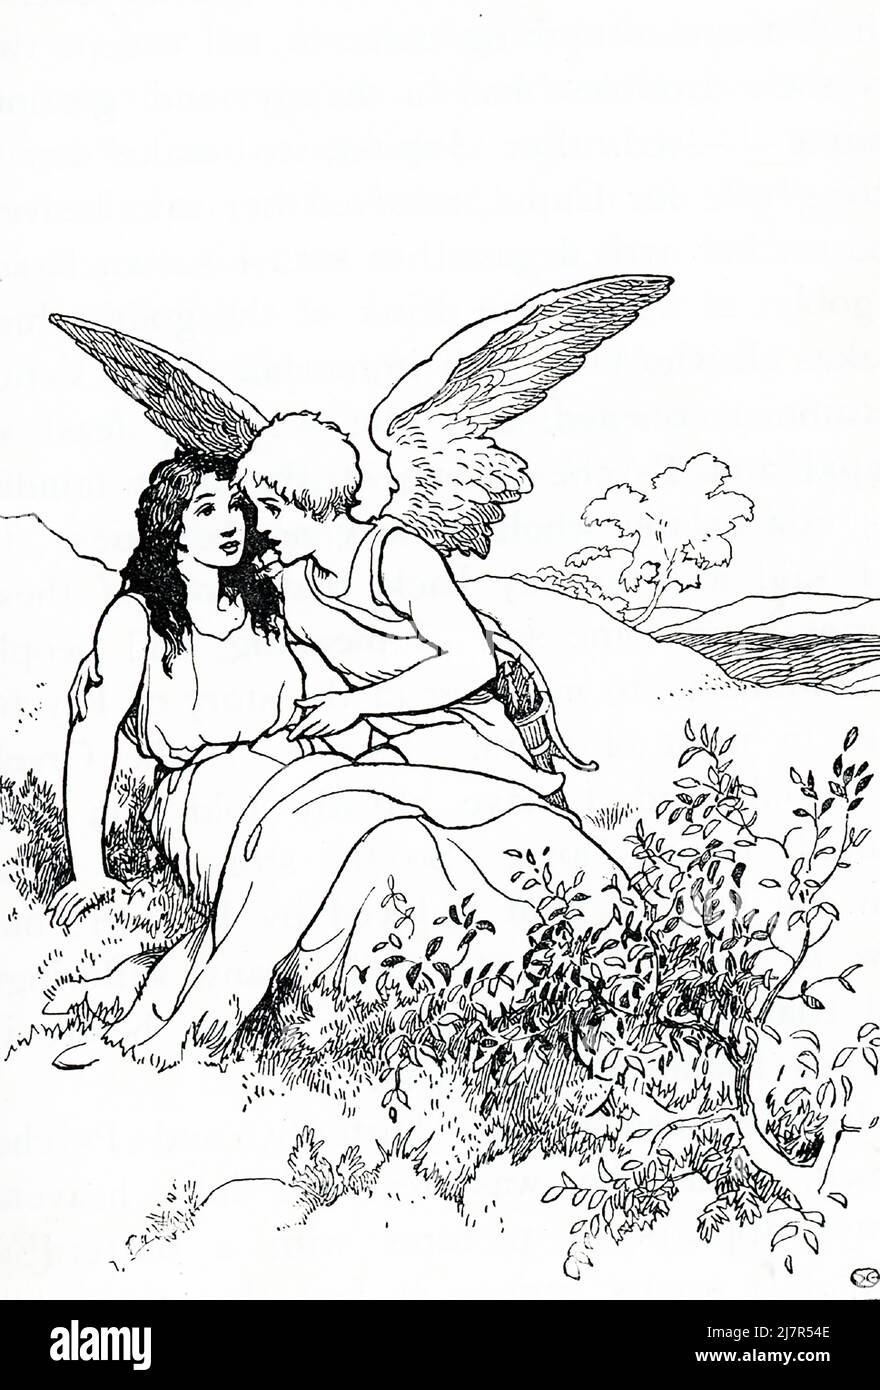 Según la mitología griega y romana, Cupido (Eros a los griegos) era el dios del amor. Su madre, Venus (Afrodita), estaba celosa de Psyche, una princesa mortal, y envió a Cupido a dispararla con una flecha de amor que la haría enamorarse de una criatura horrible. Por accidente, Cupido se engañó a sí mismo como lo hizo y revirtió el efecto en Psyche. Venus intentó sin éxito mantener los dos separados. Finalmente, Cupido y Pysche (vistos aquí juntos) se les permitió casarse, y a Psyche se le concedió inmortalidad. Foto de stock